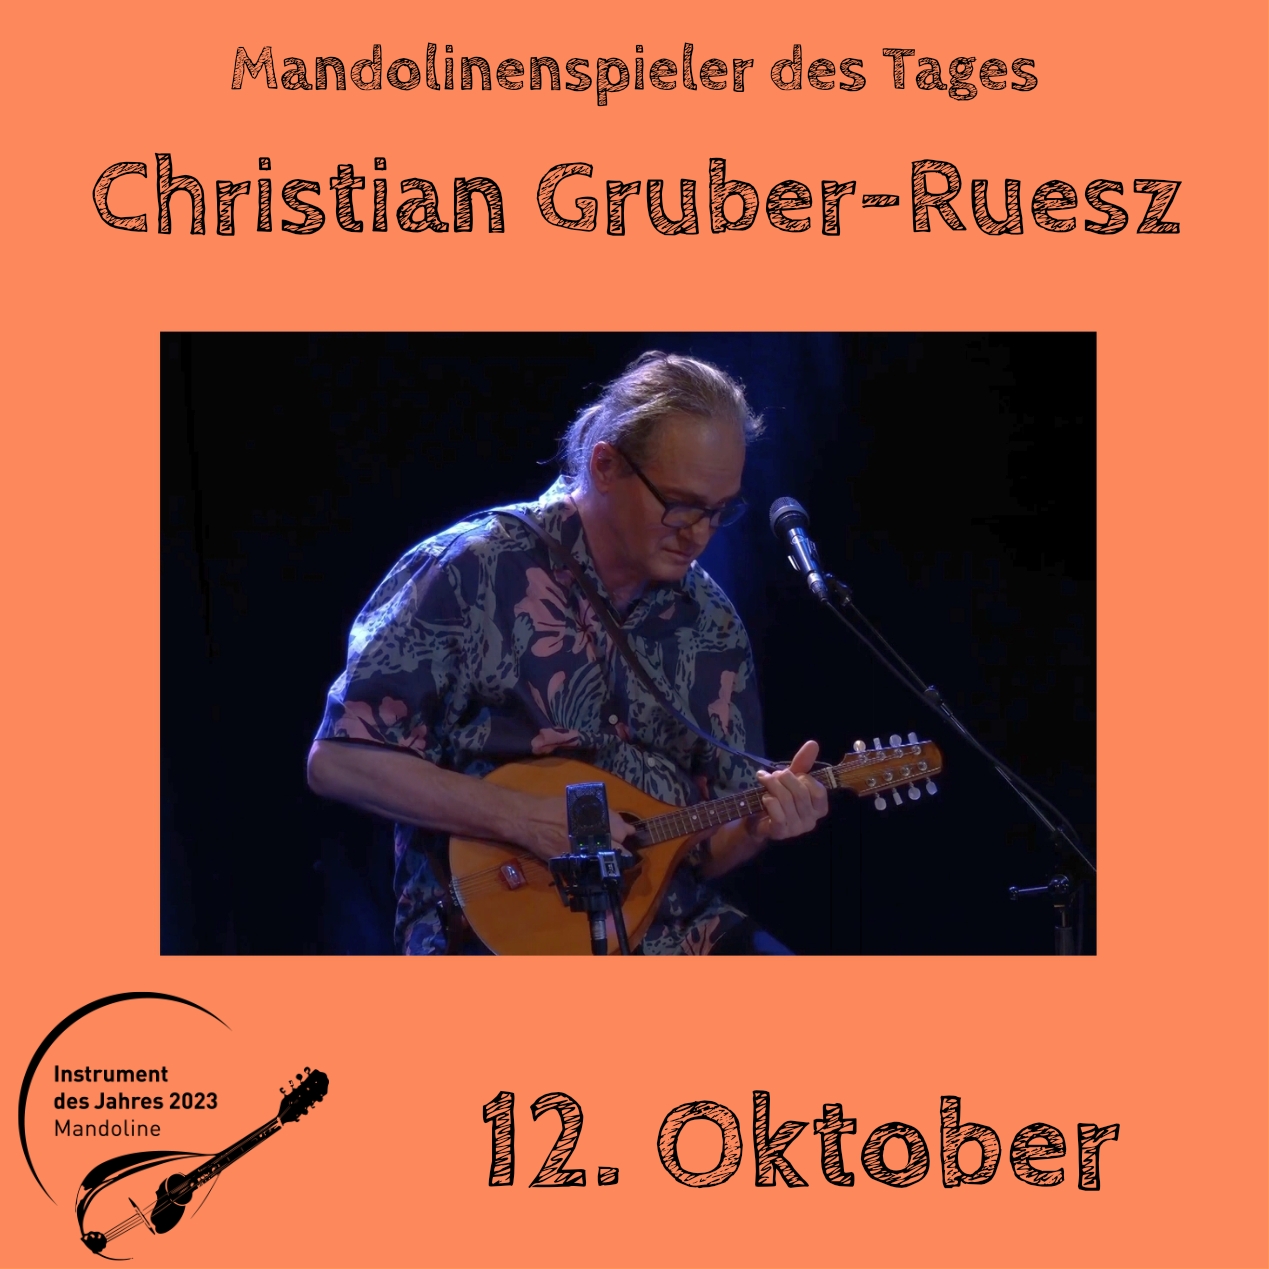 12. Oktober - Christian Gruber-Ruesz Instrument des Jahres 2023 Mandolinenspieler Mandolinenspielerin des Tages